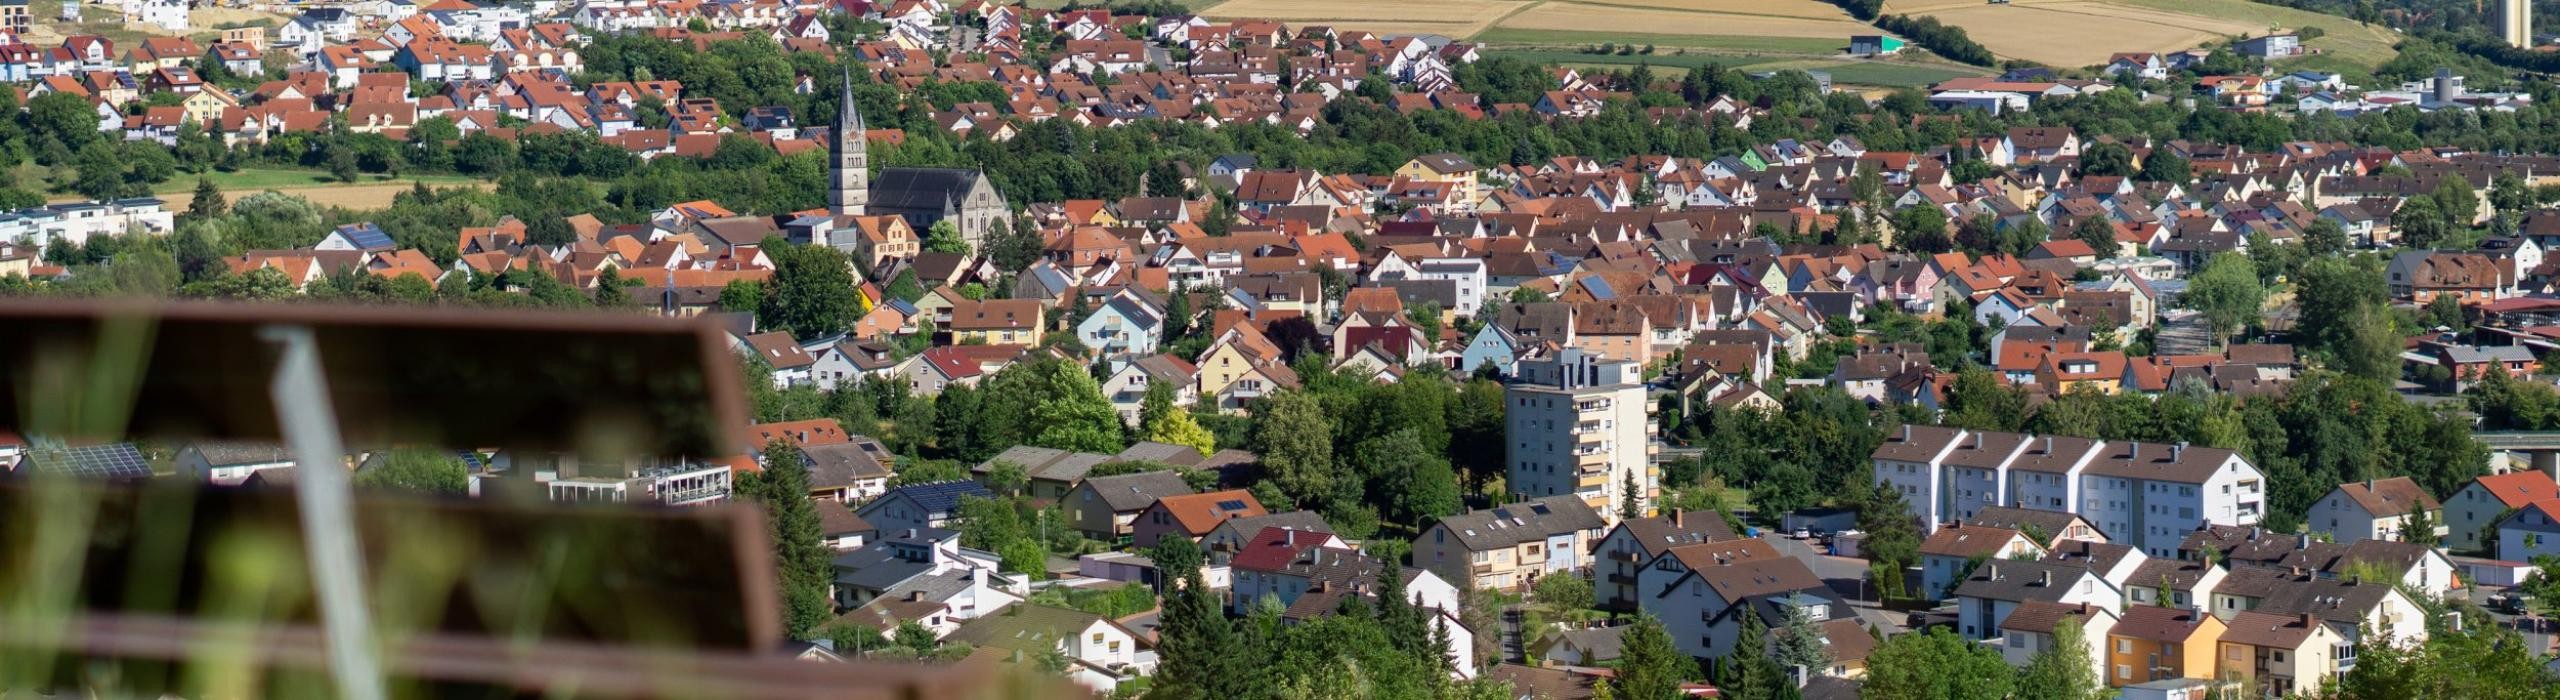 Landschaftaufnahme Igersheim im Hintergrund, Bank im Vordergrund